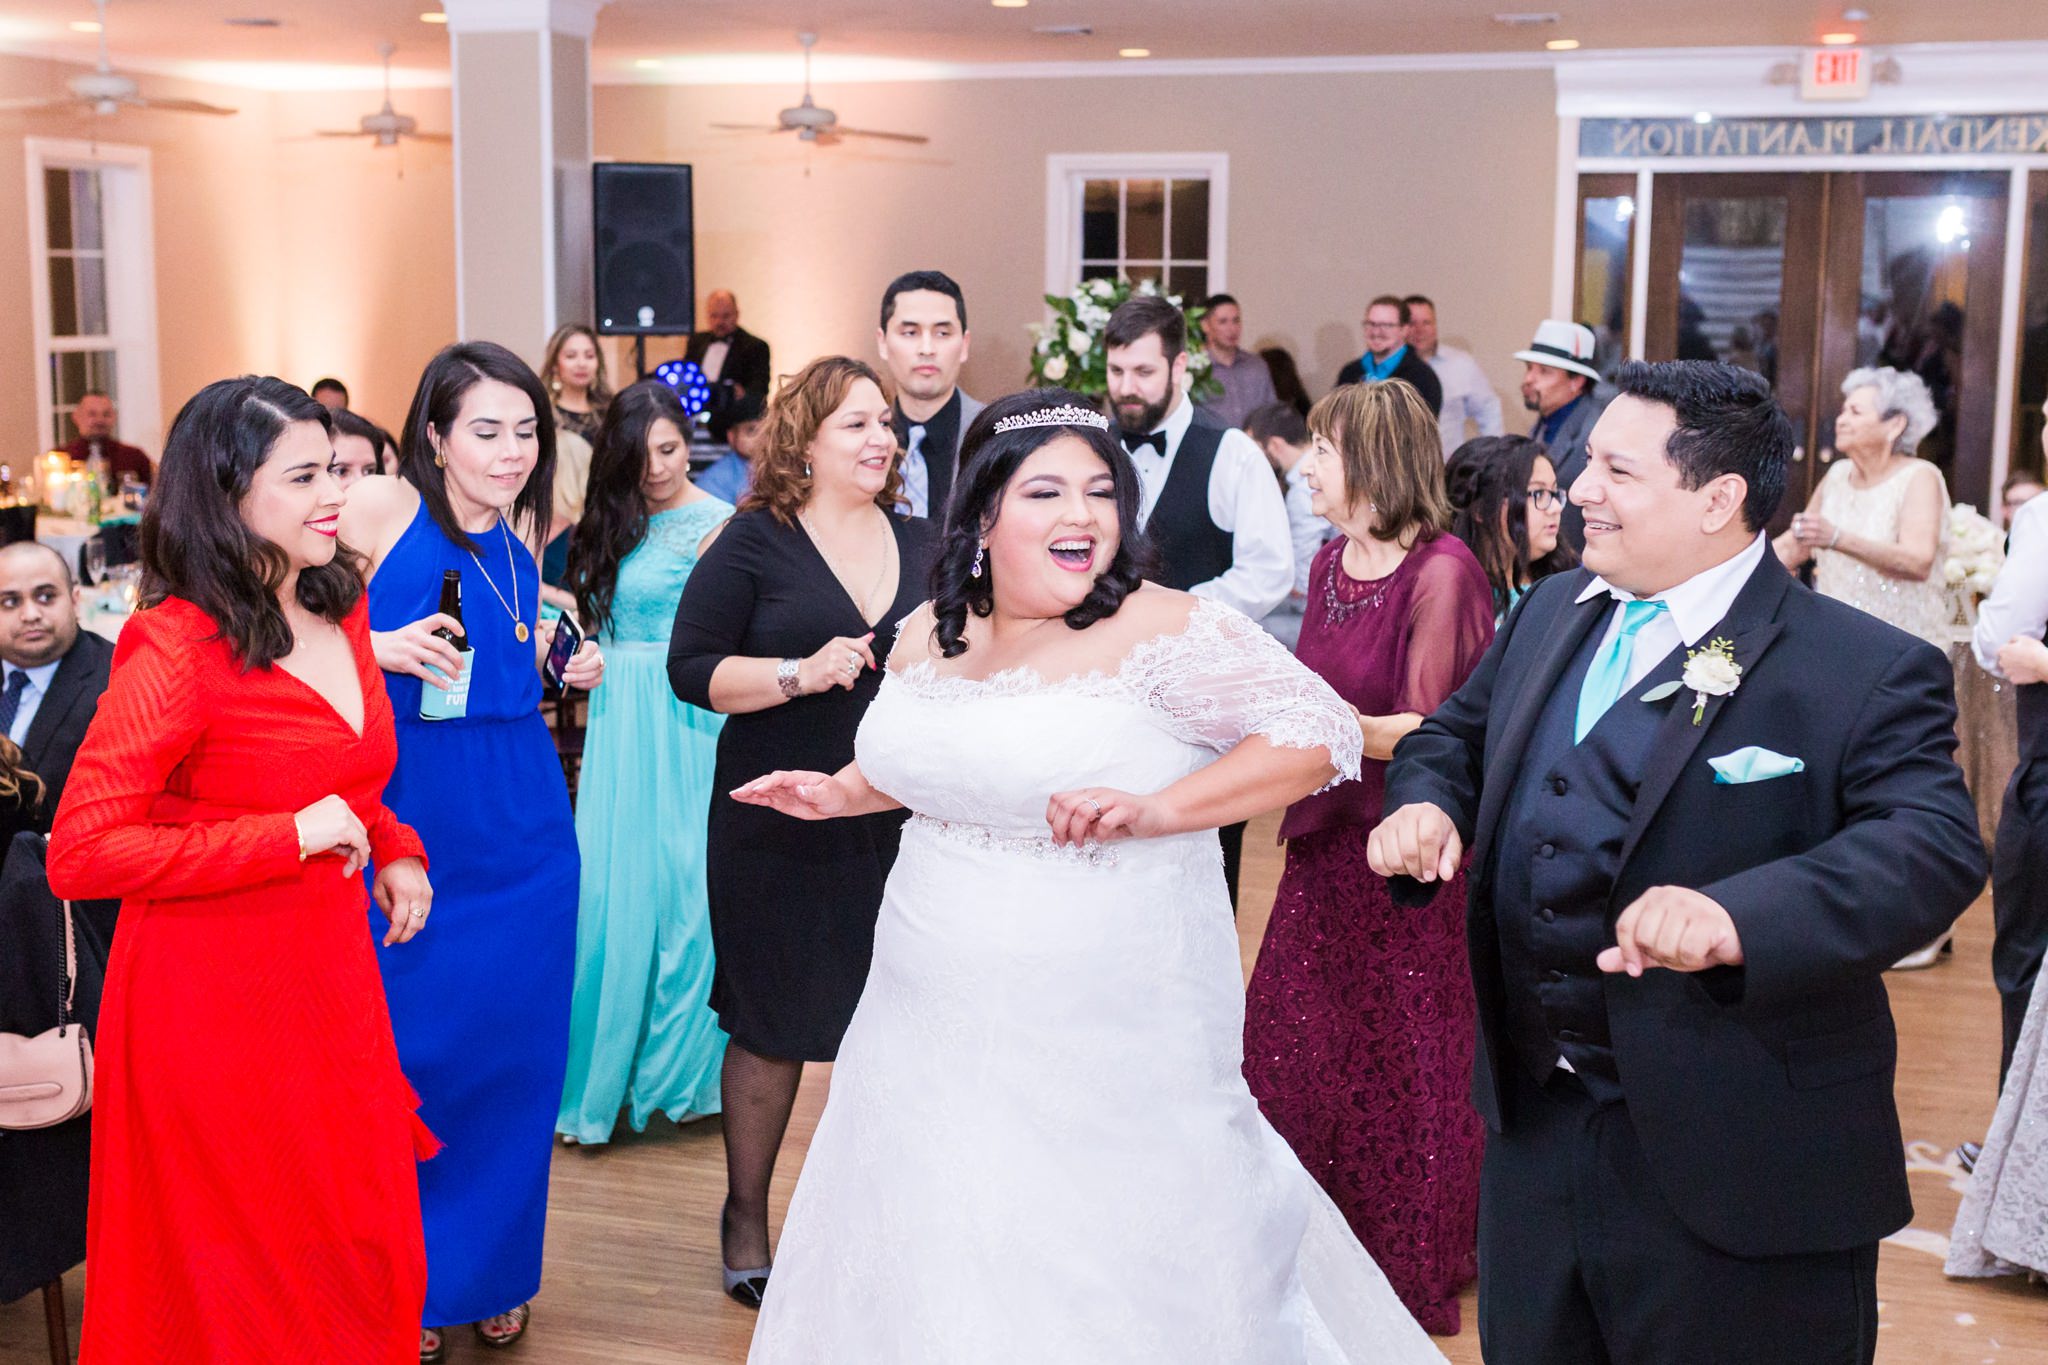 An Aqua, Blush and Champagne Wedding at Kendall Plantation in Boerne, TX by Dawn Elizabeth Studios, San Antonio Wedding Photographer, Texas Wedding Photographer